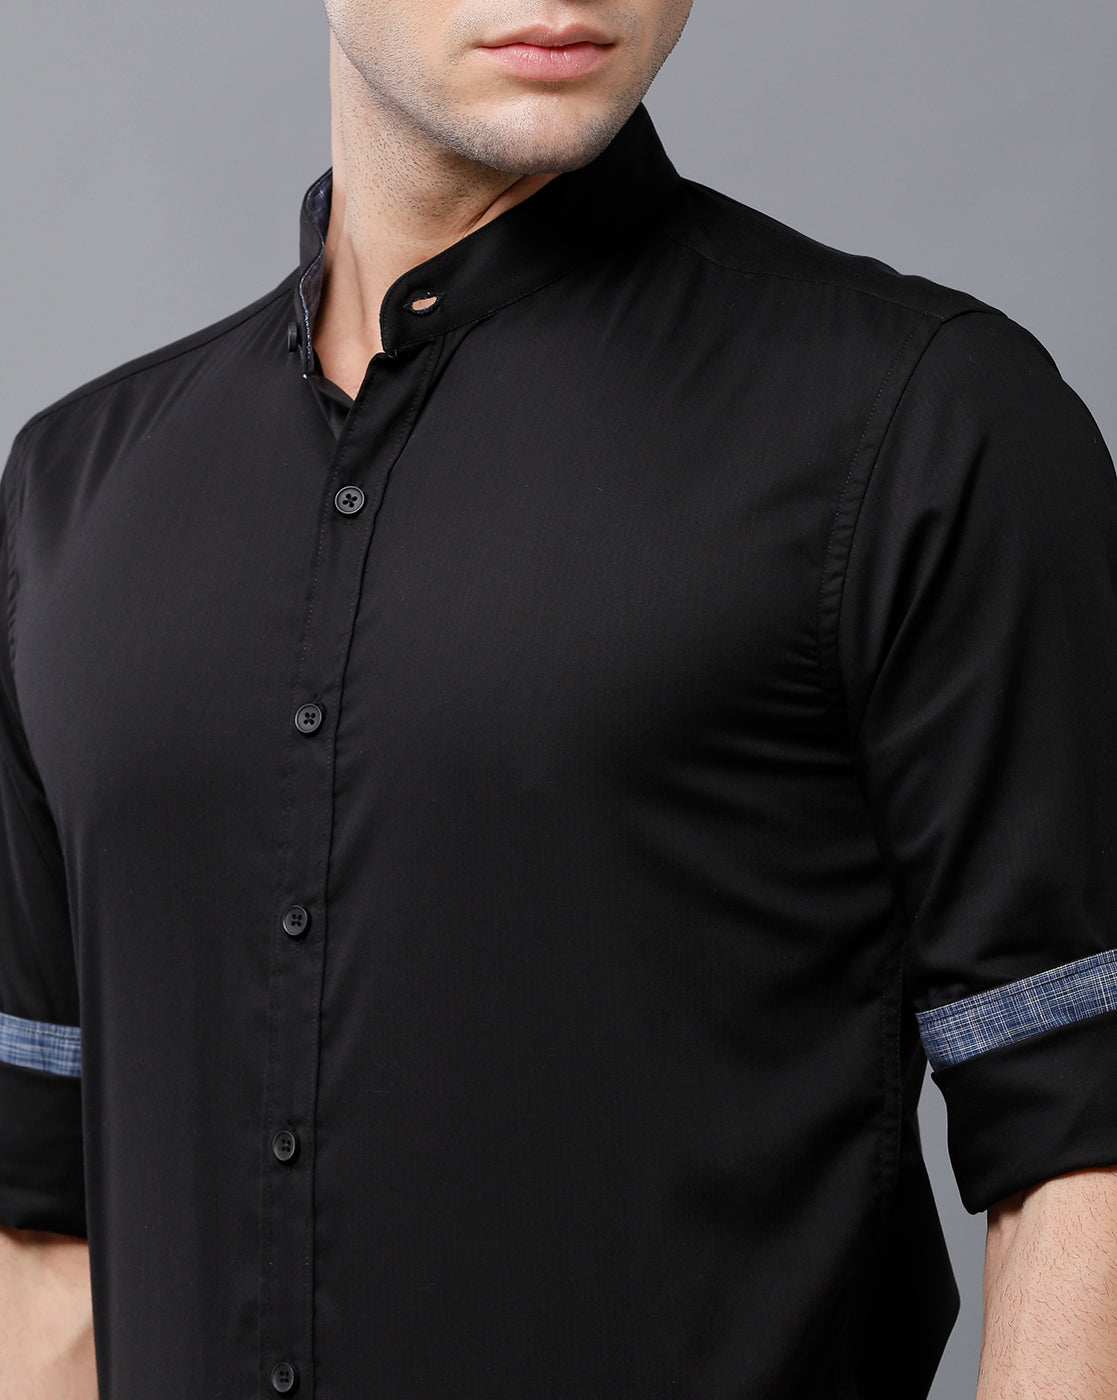 Black mandarin collar shirt